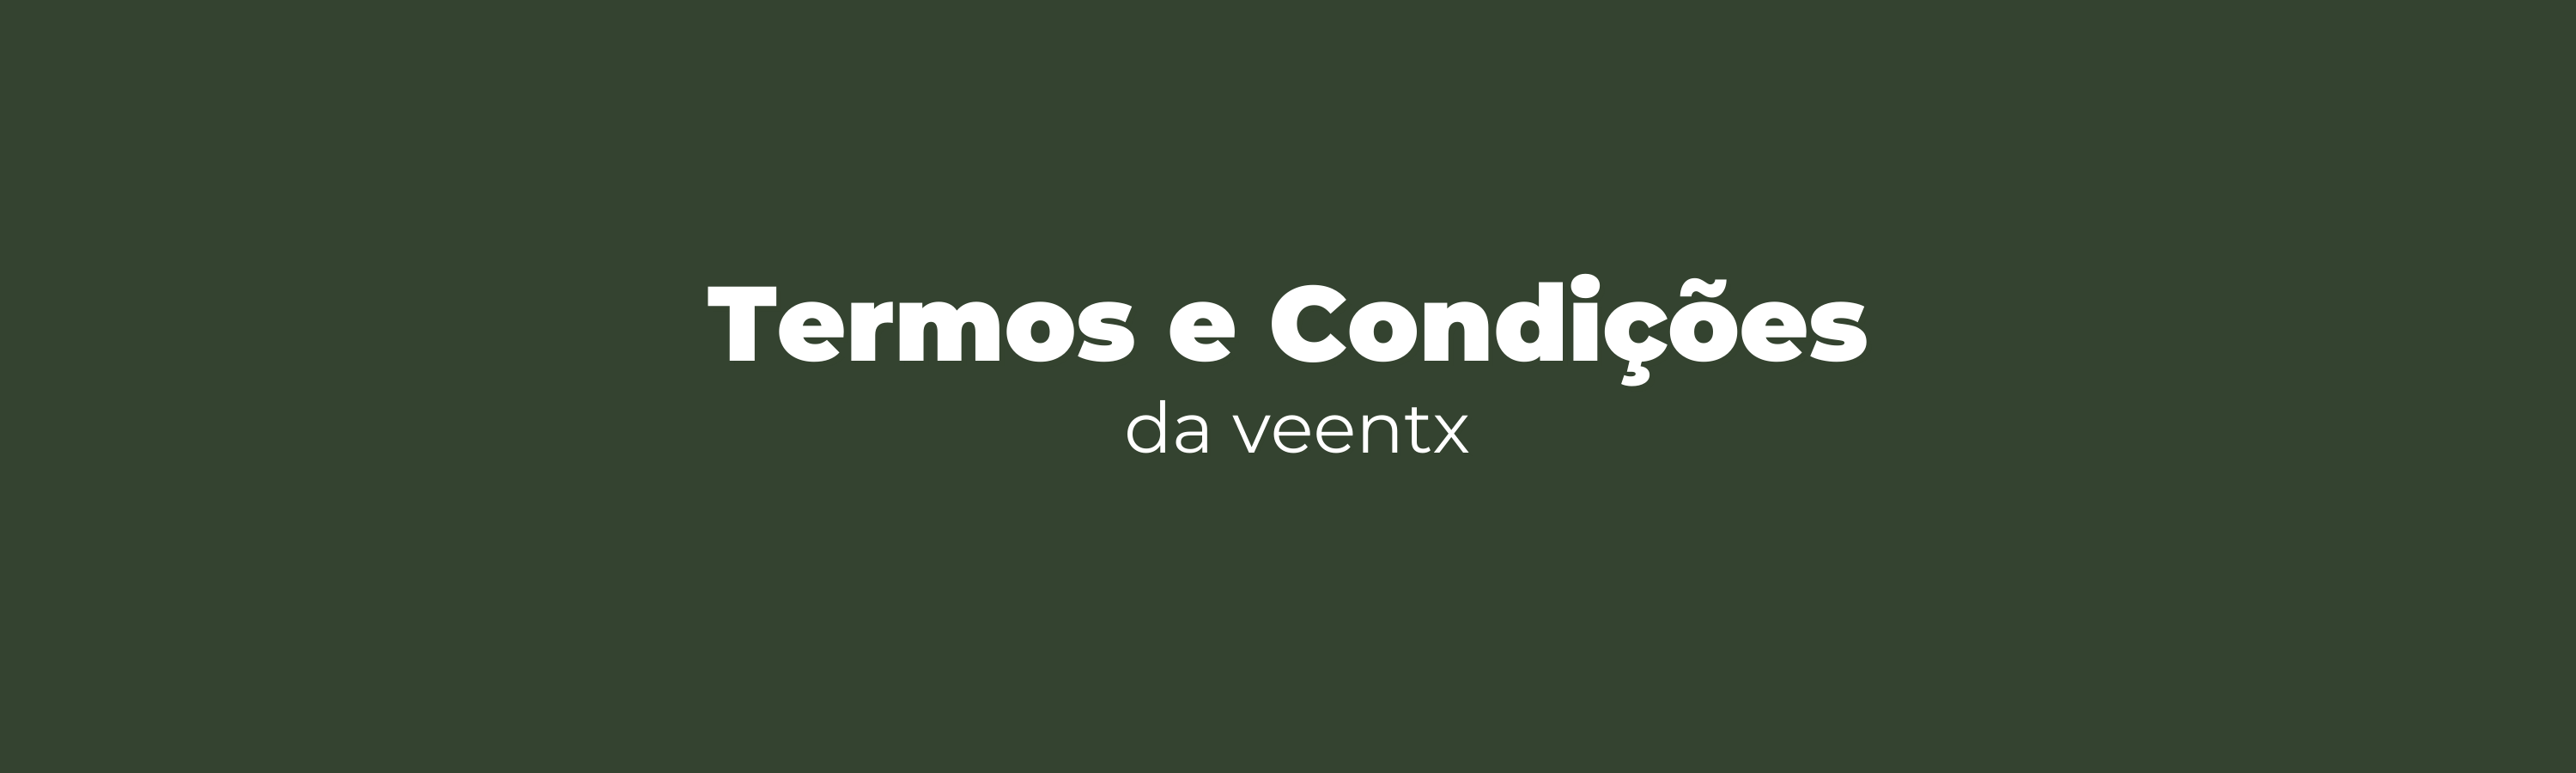 termos e condições de uso da veentx